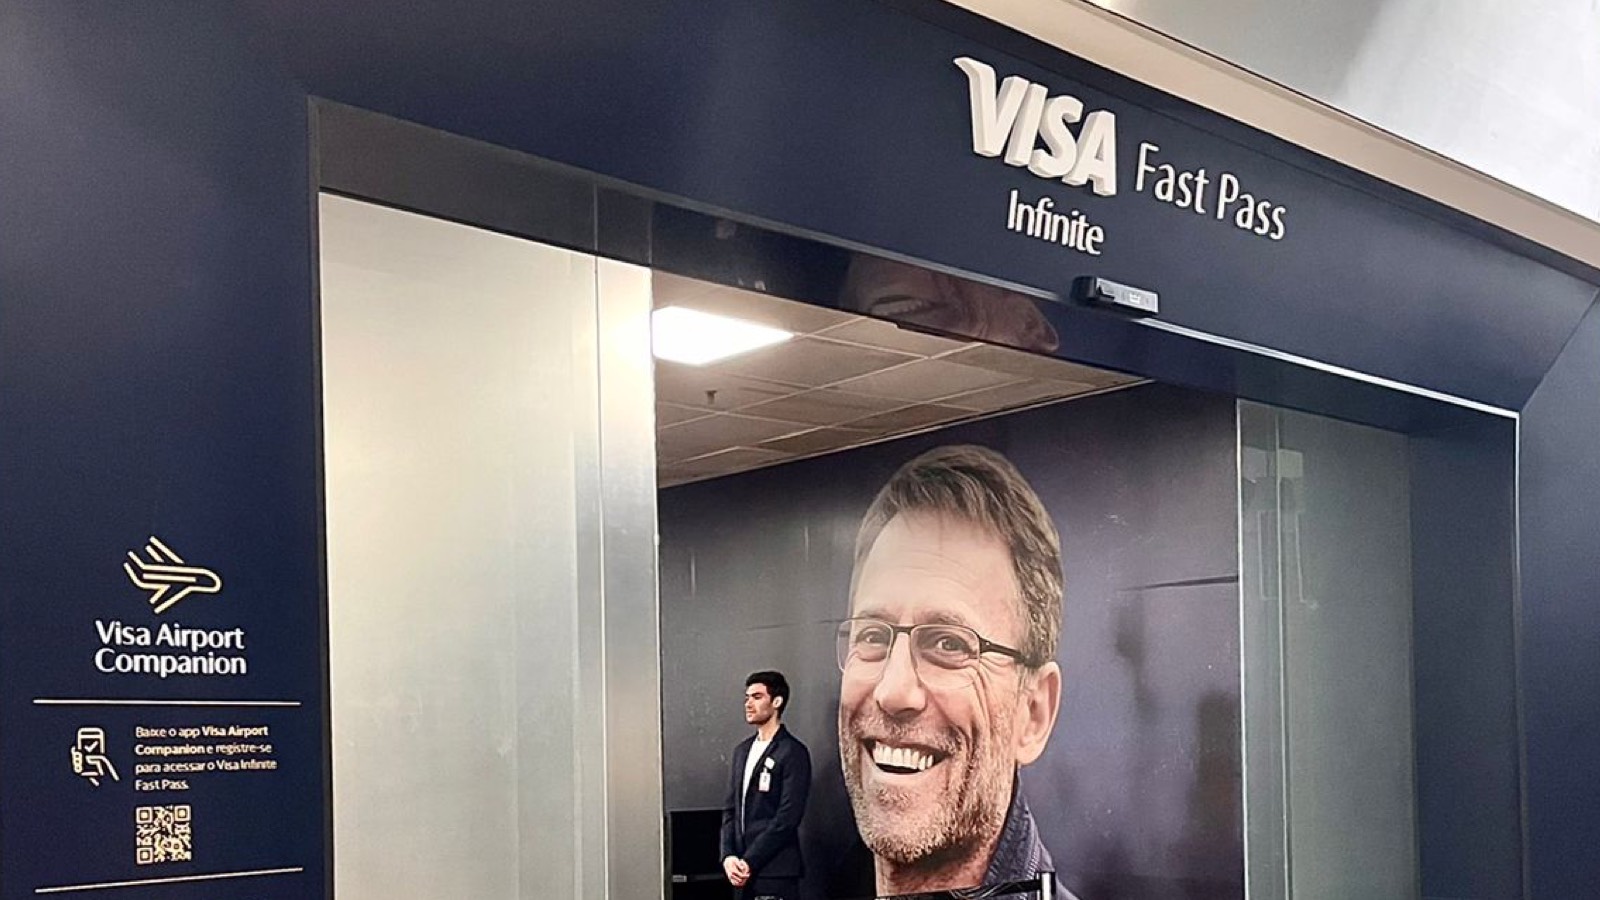 Imagem do balcão de atendimento Visa Infinite Fast Pass